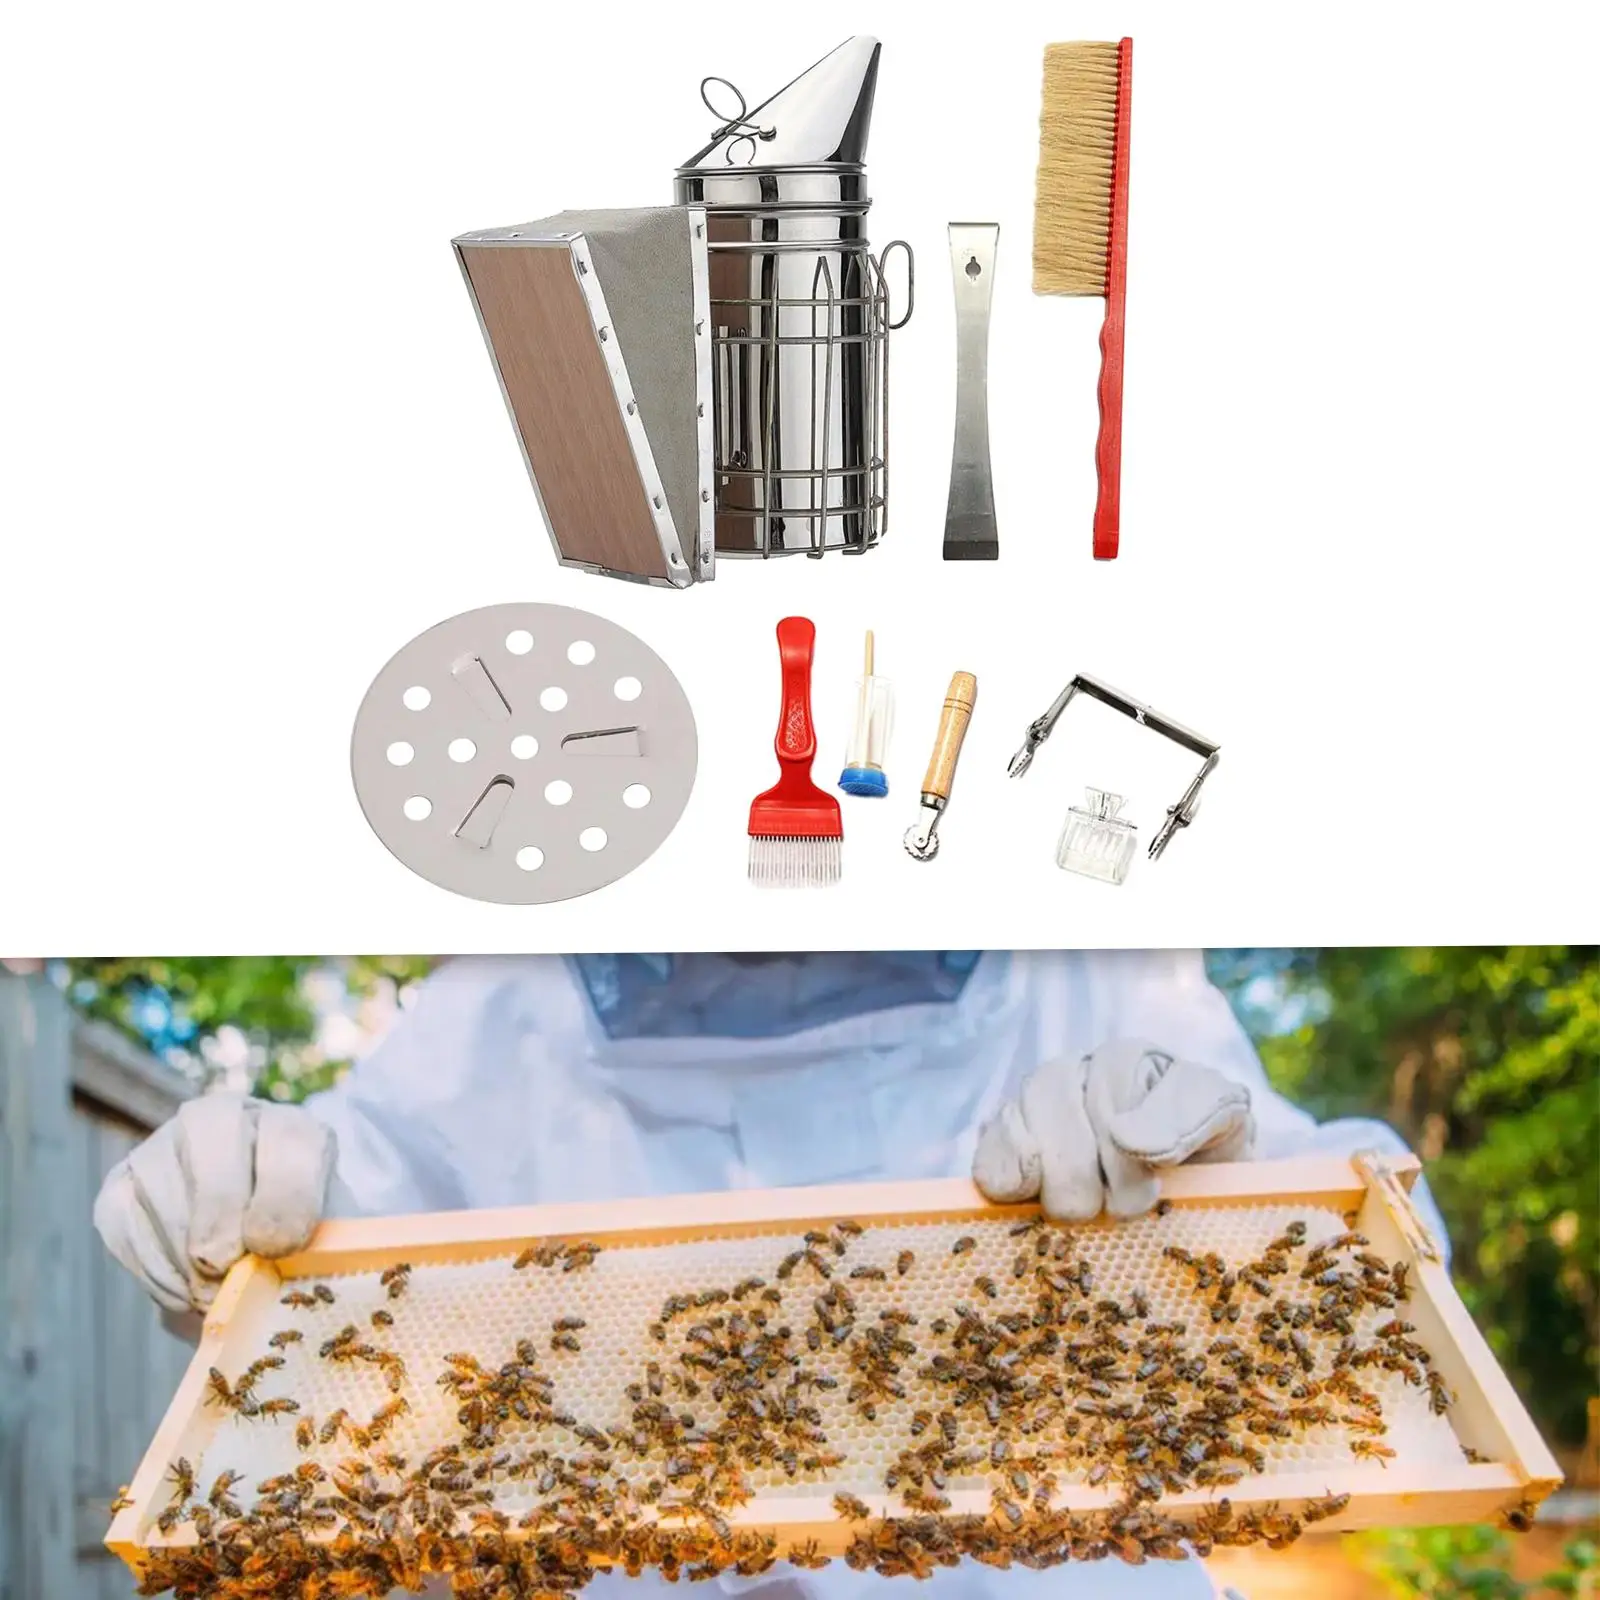 8x Beekeeping Tool Kit Set Apiculture Tool Wood Beekeeping Supplies Kits for Farm Beekeepers Bee Keeping Professionals Backyard